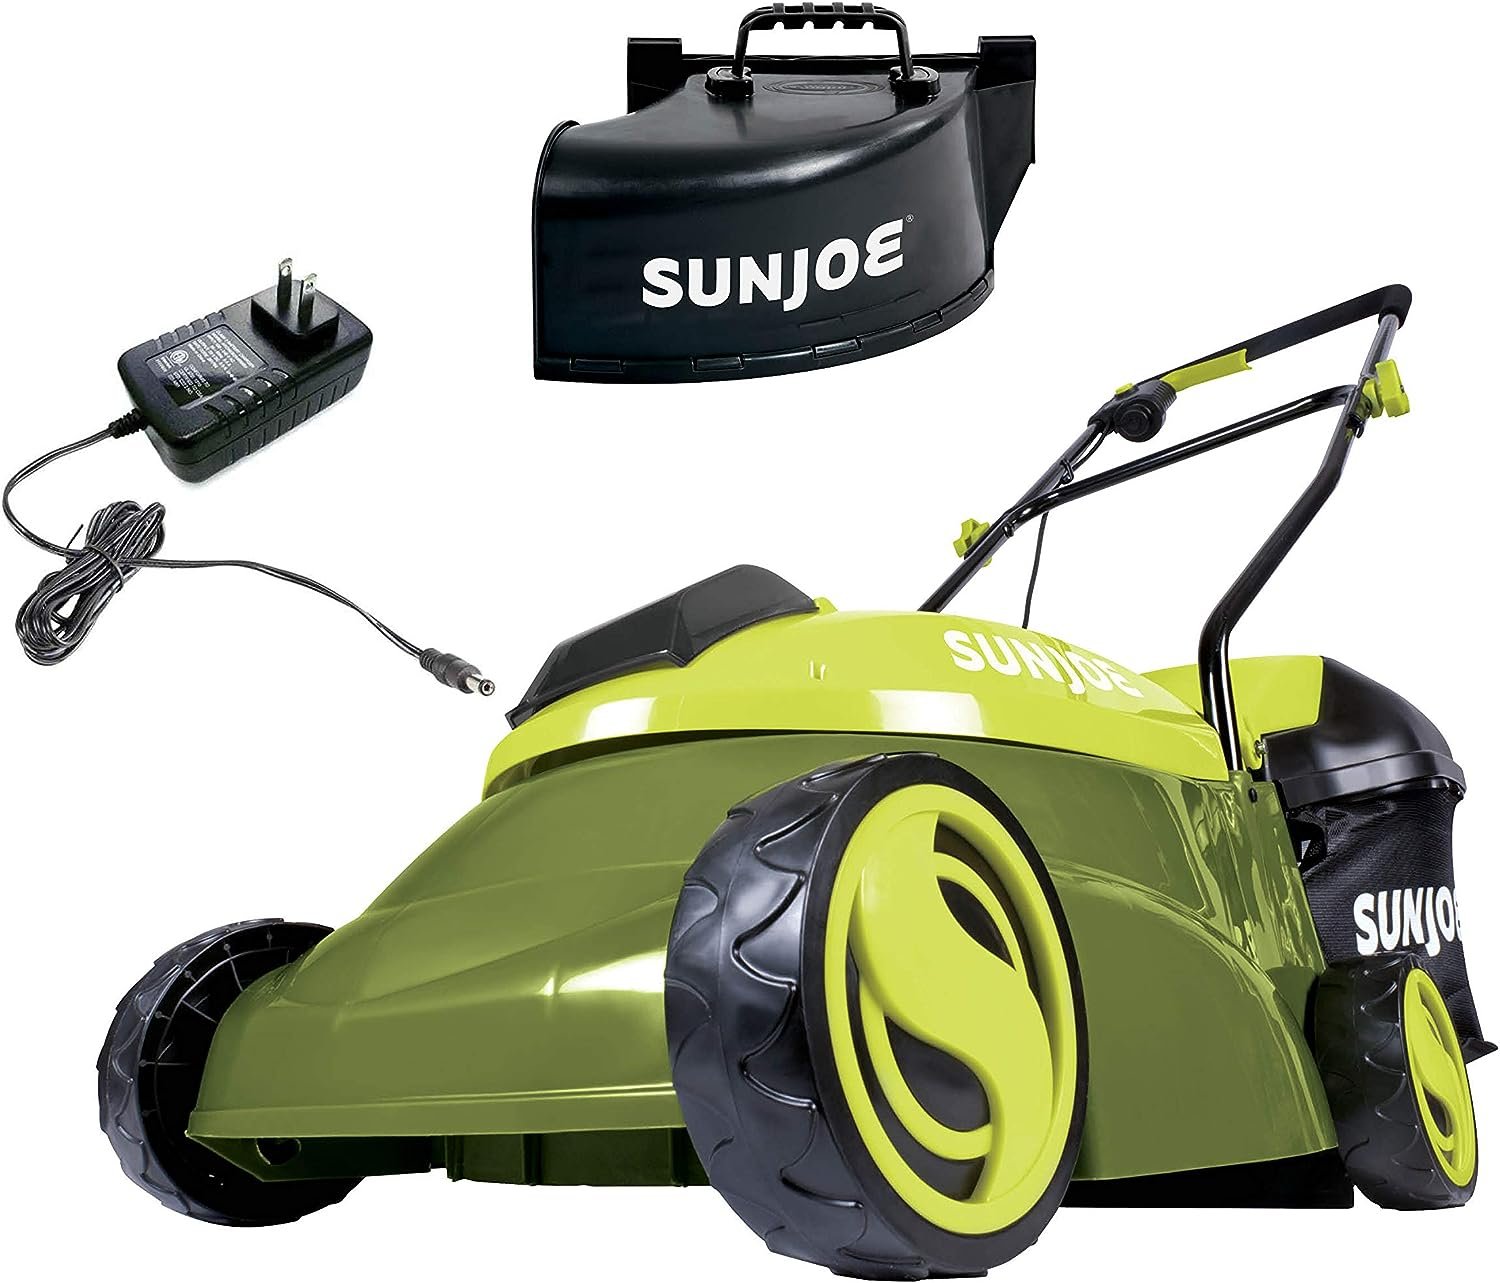 Sun Joe MJ401C-XR 14-Inch Lawn Mower Review